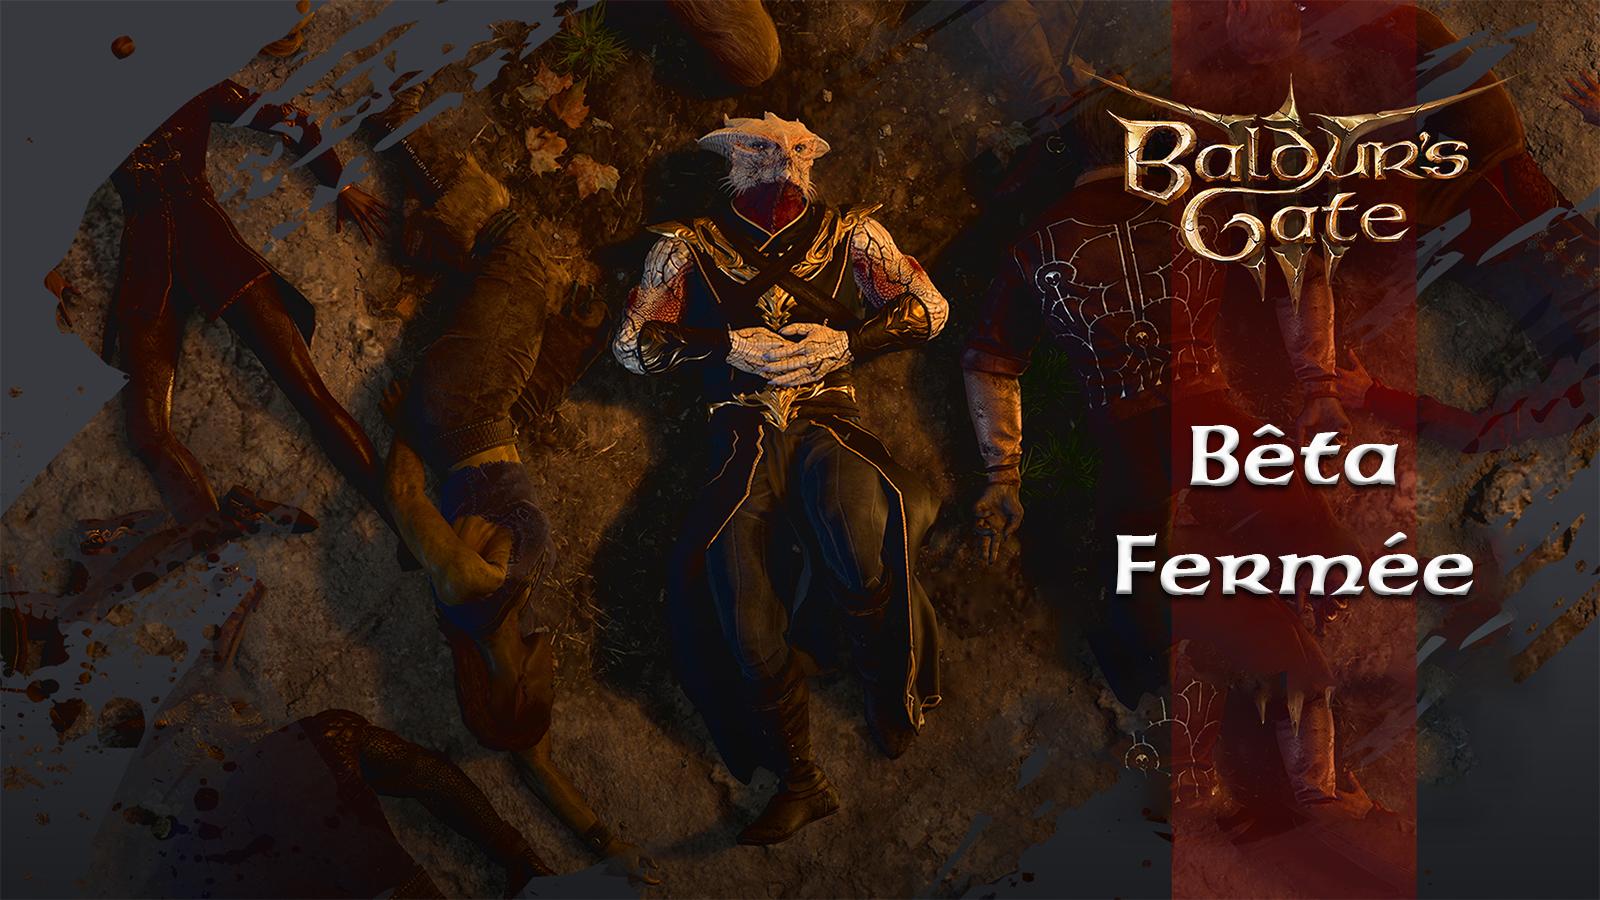 Dark Urges pour annoncer la bêta fermée deu patch 7 de Baldur's Gate 3